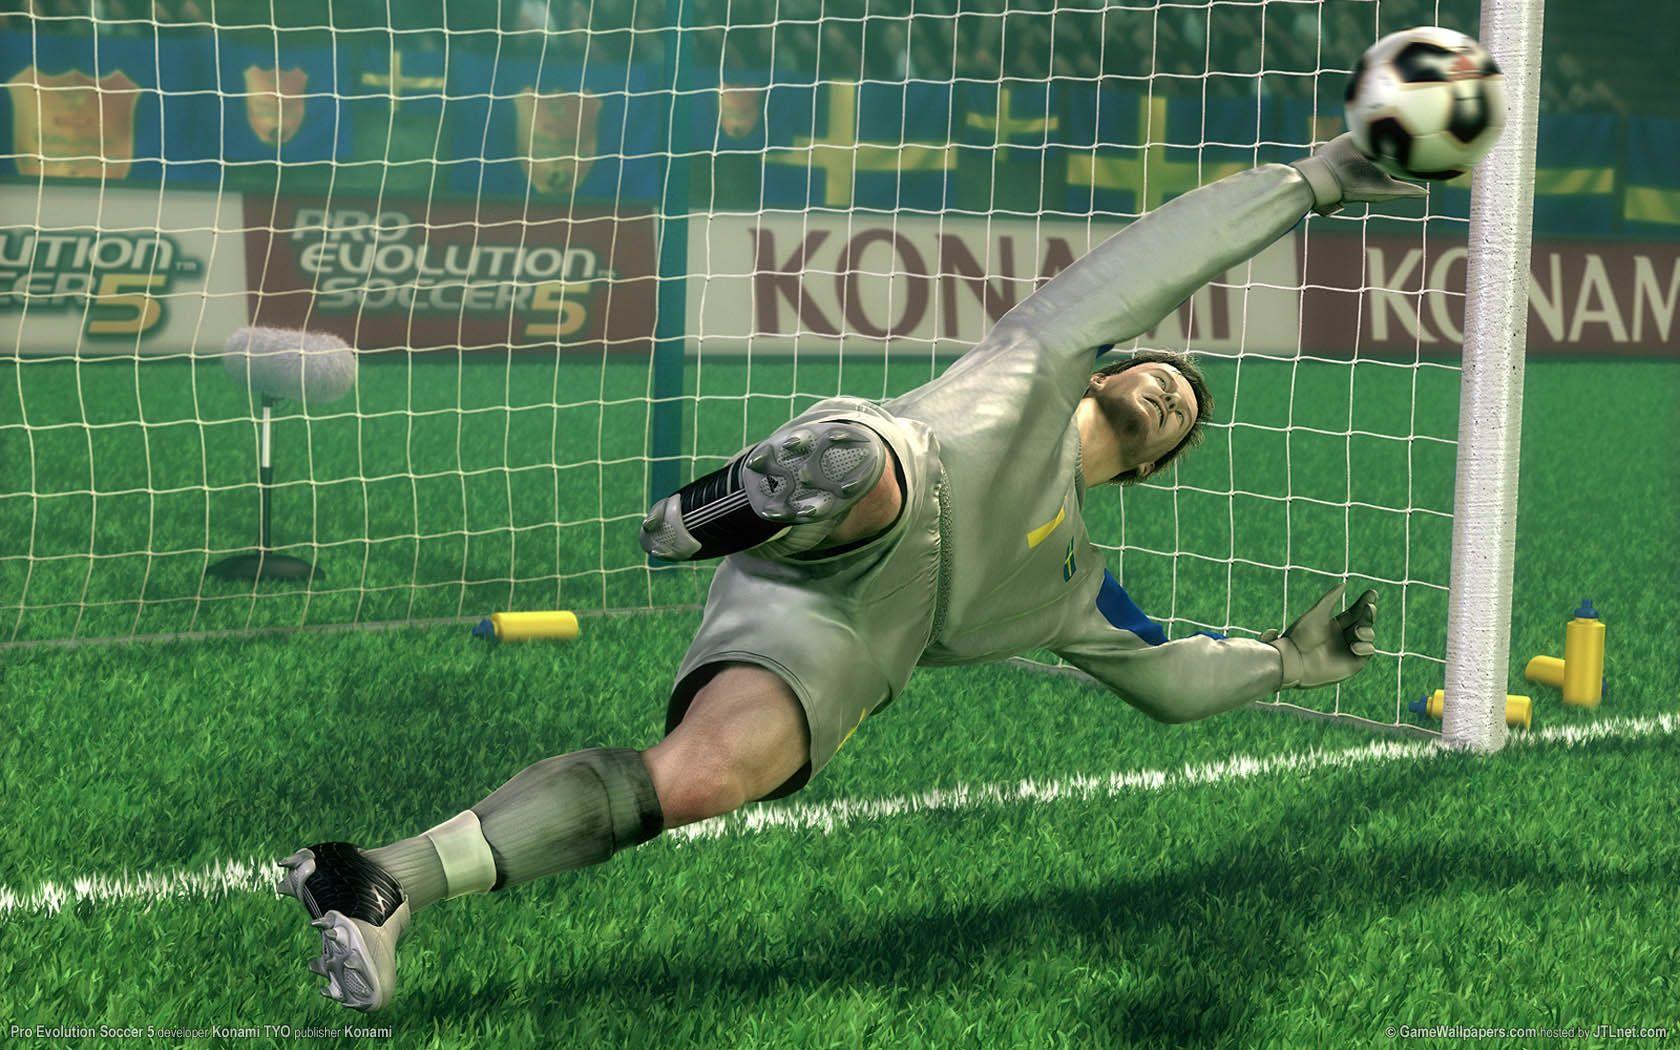 Pro Evolution Soccer 5 wallpaper or desktop background